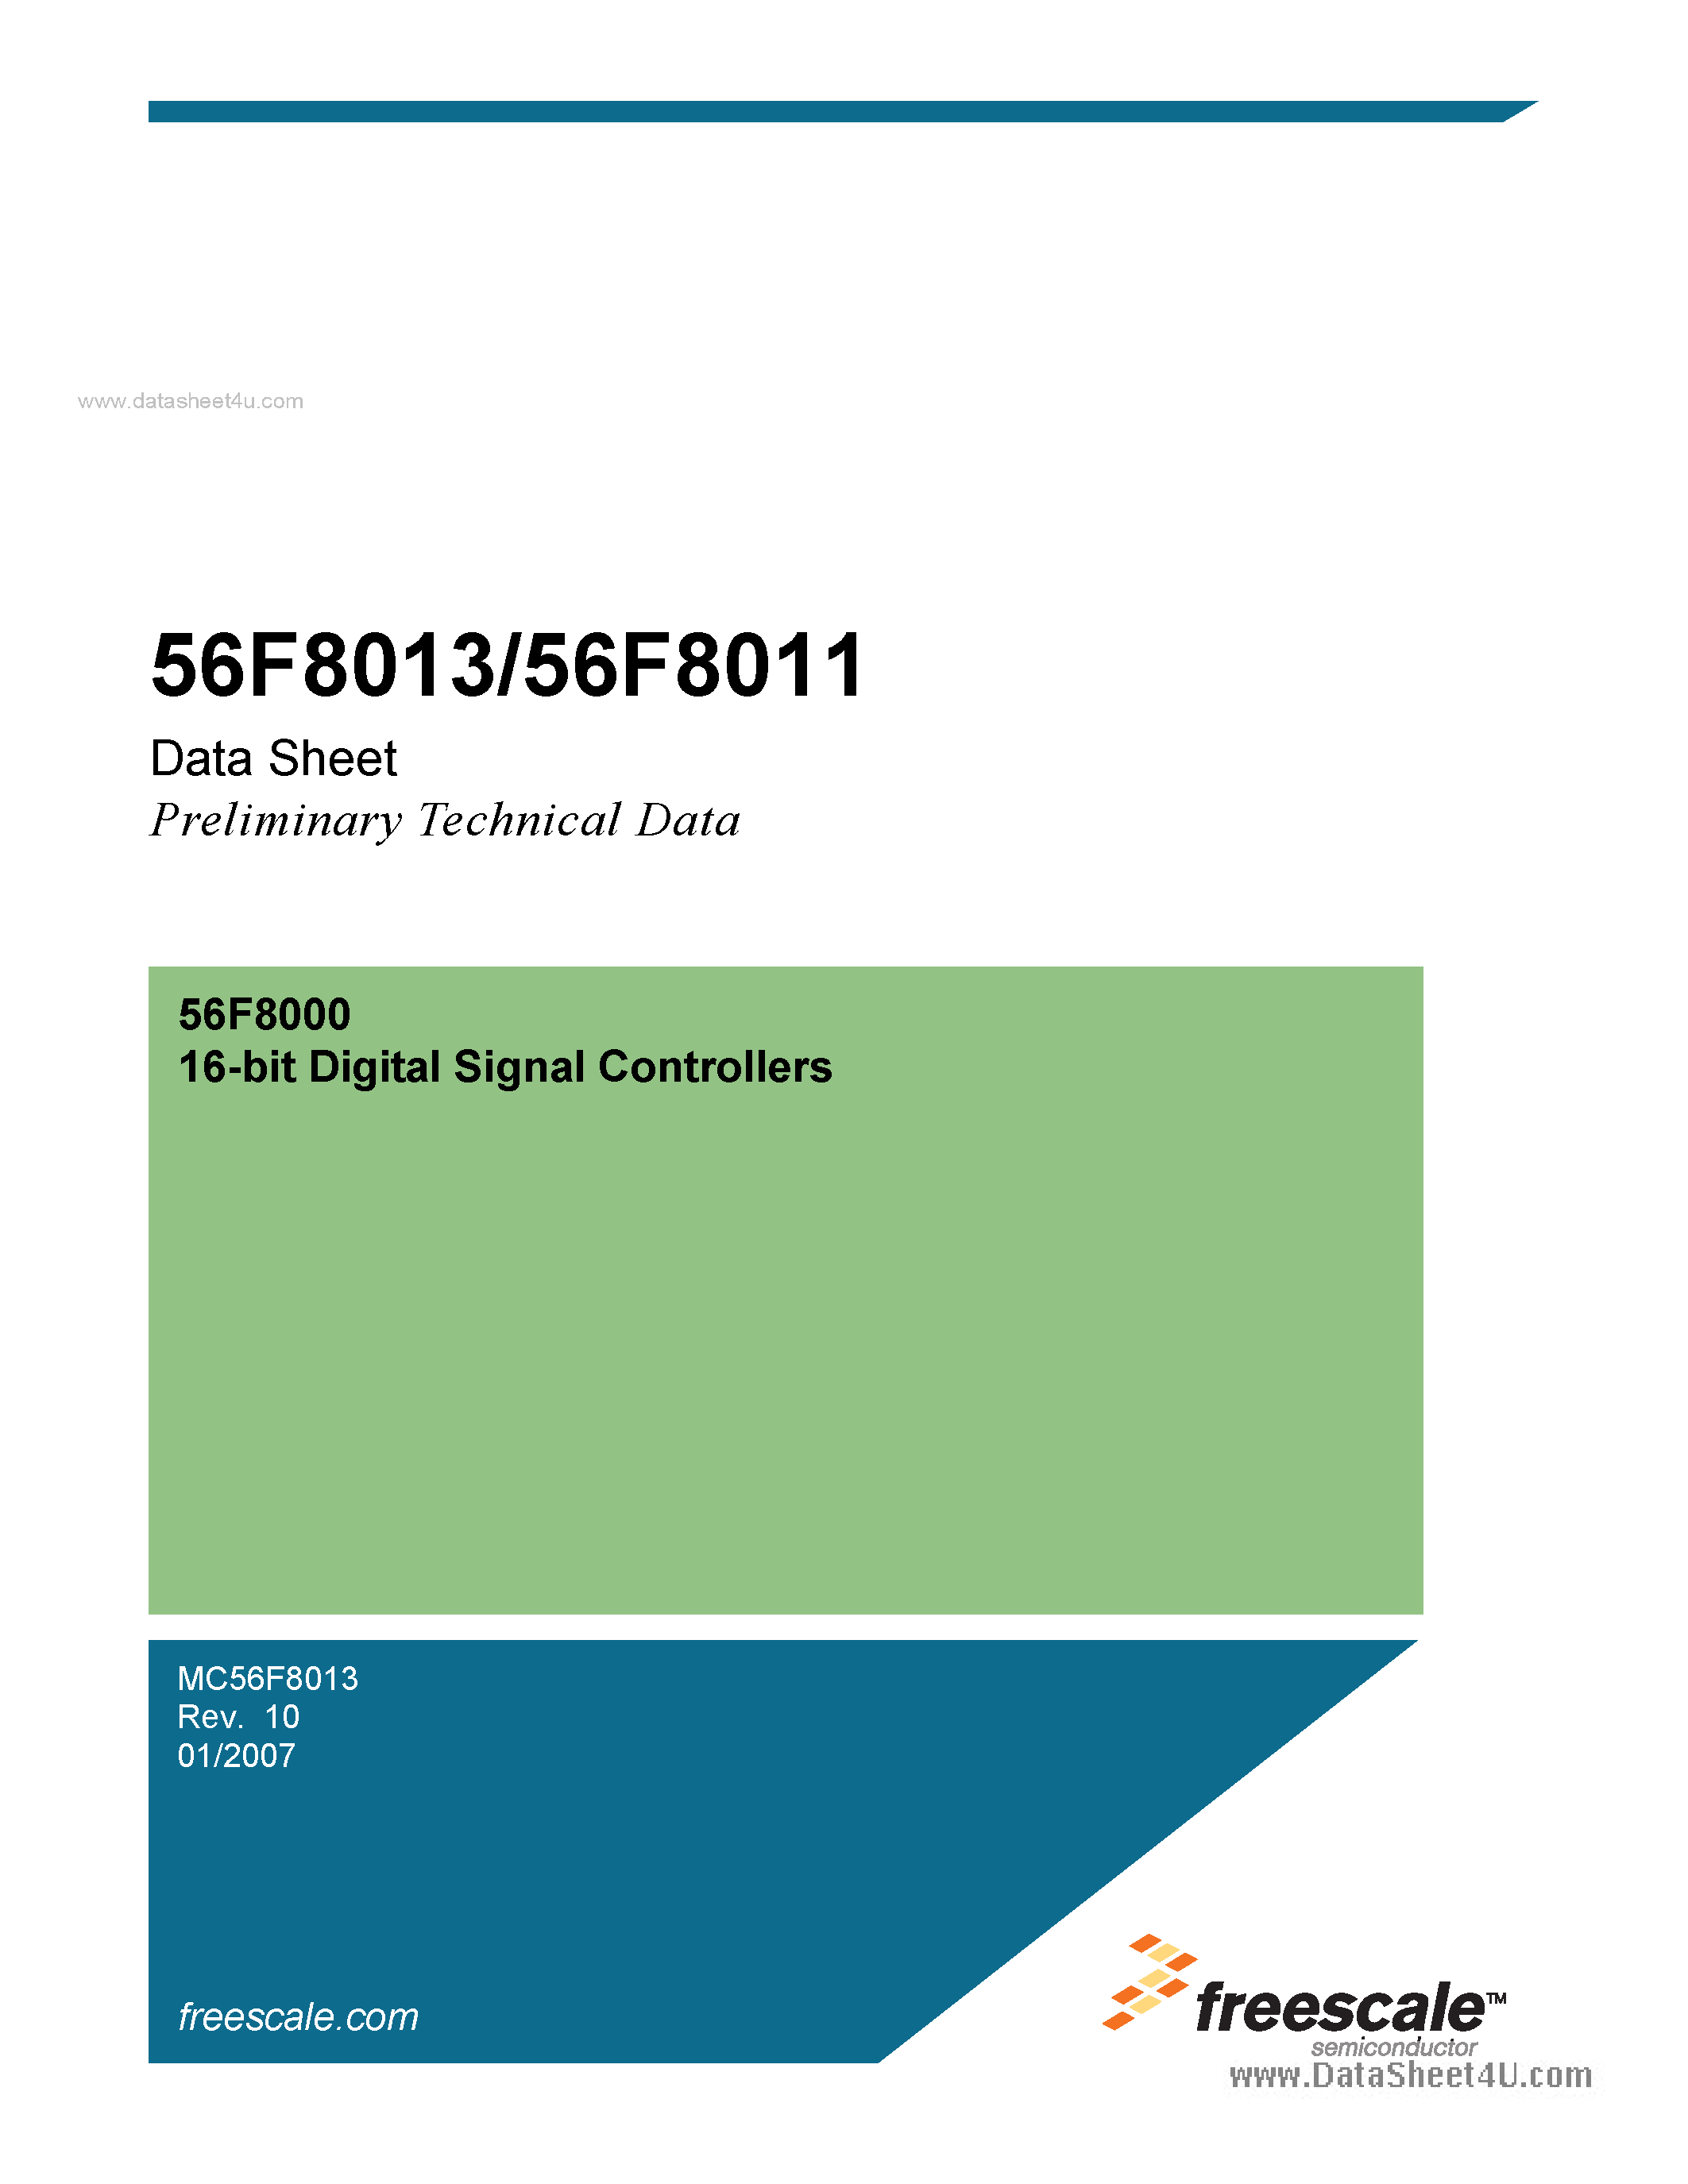 Даташит MC56F8011 - (MC56F8011 / MC56F8013) 16-bit Digital Signal Controllers страница 1